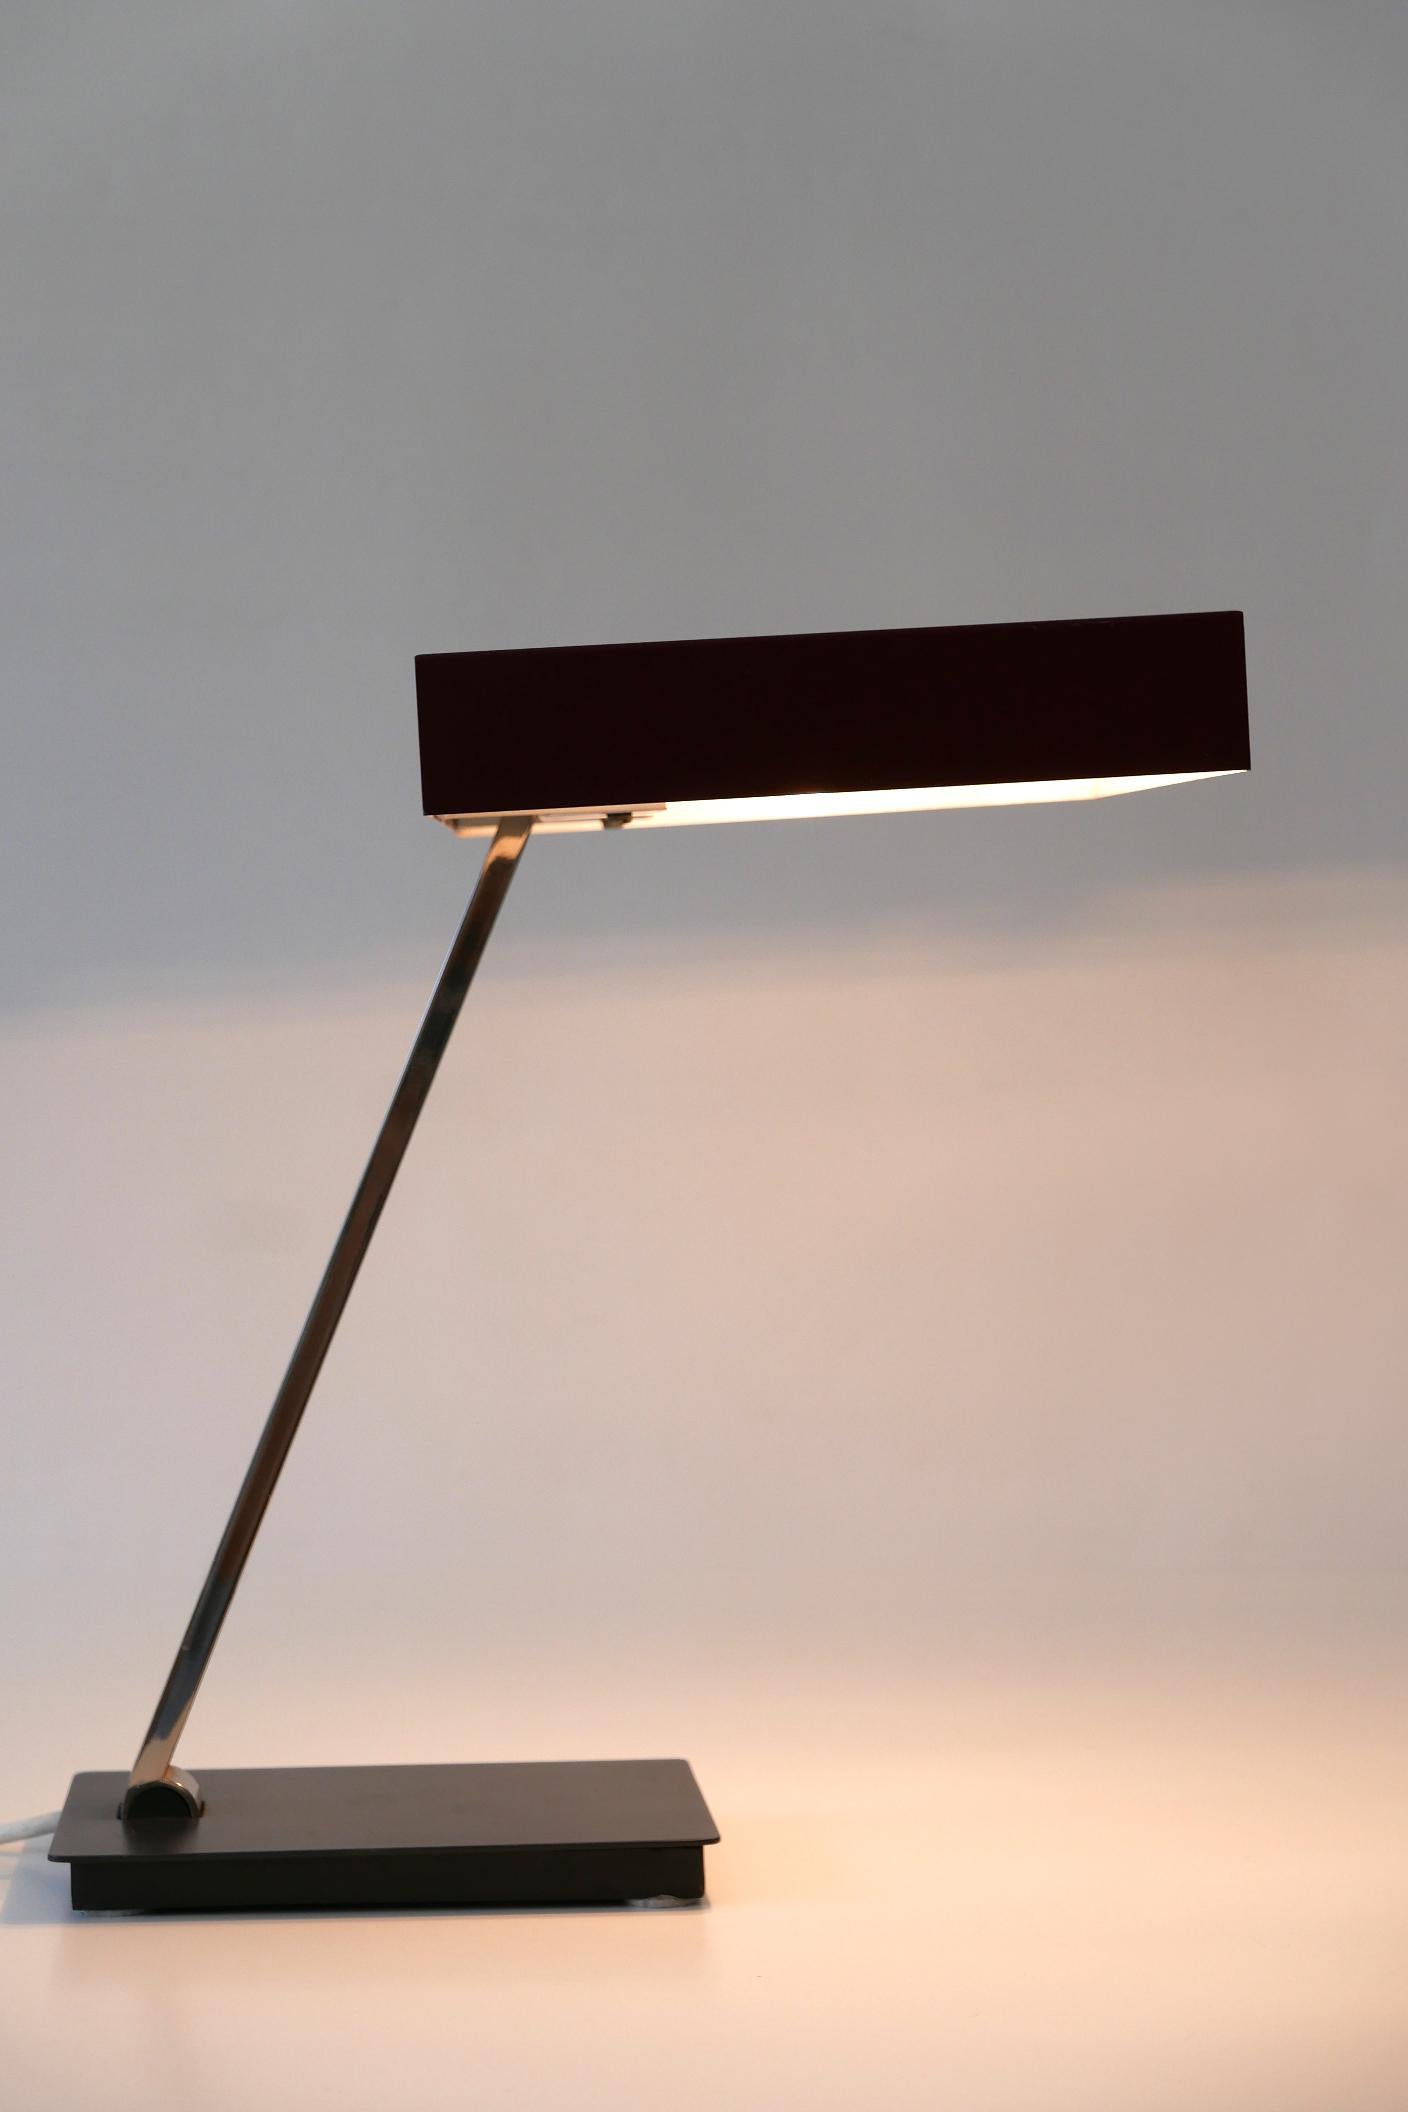 Luxury Mid-Century Modern President Table Lamp by Kaiser Leuchten 1960s Germany For Sale 7